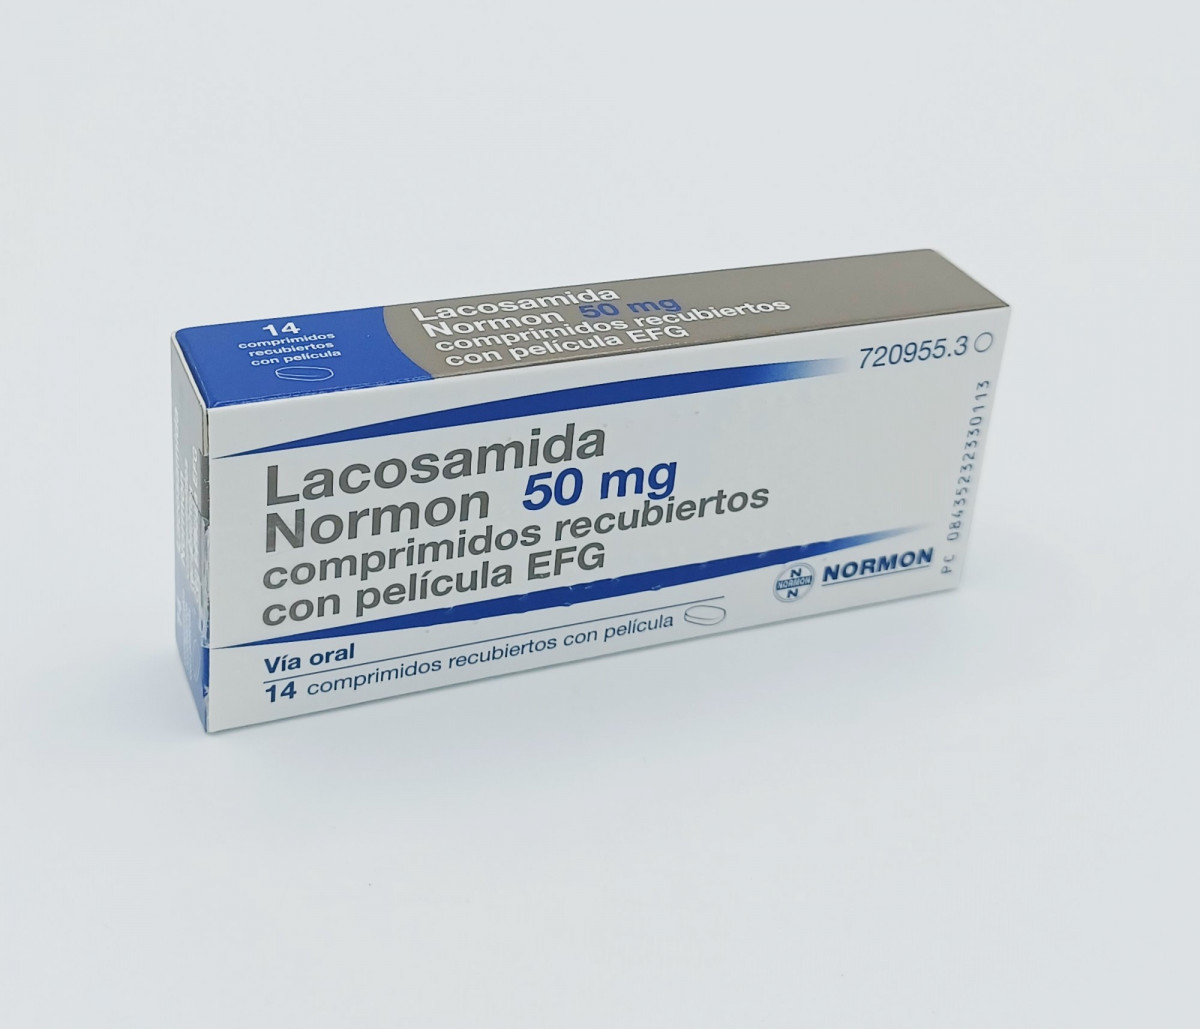 LACOSAMIDA NORMON 50 MG COMPRIMIDOS RECUBIERTOS CON PELICULA EFG, 14 comprimidos (Blister Al/PVC) fotografía del envase.